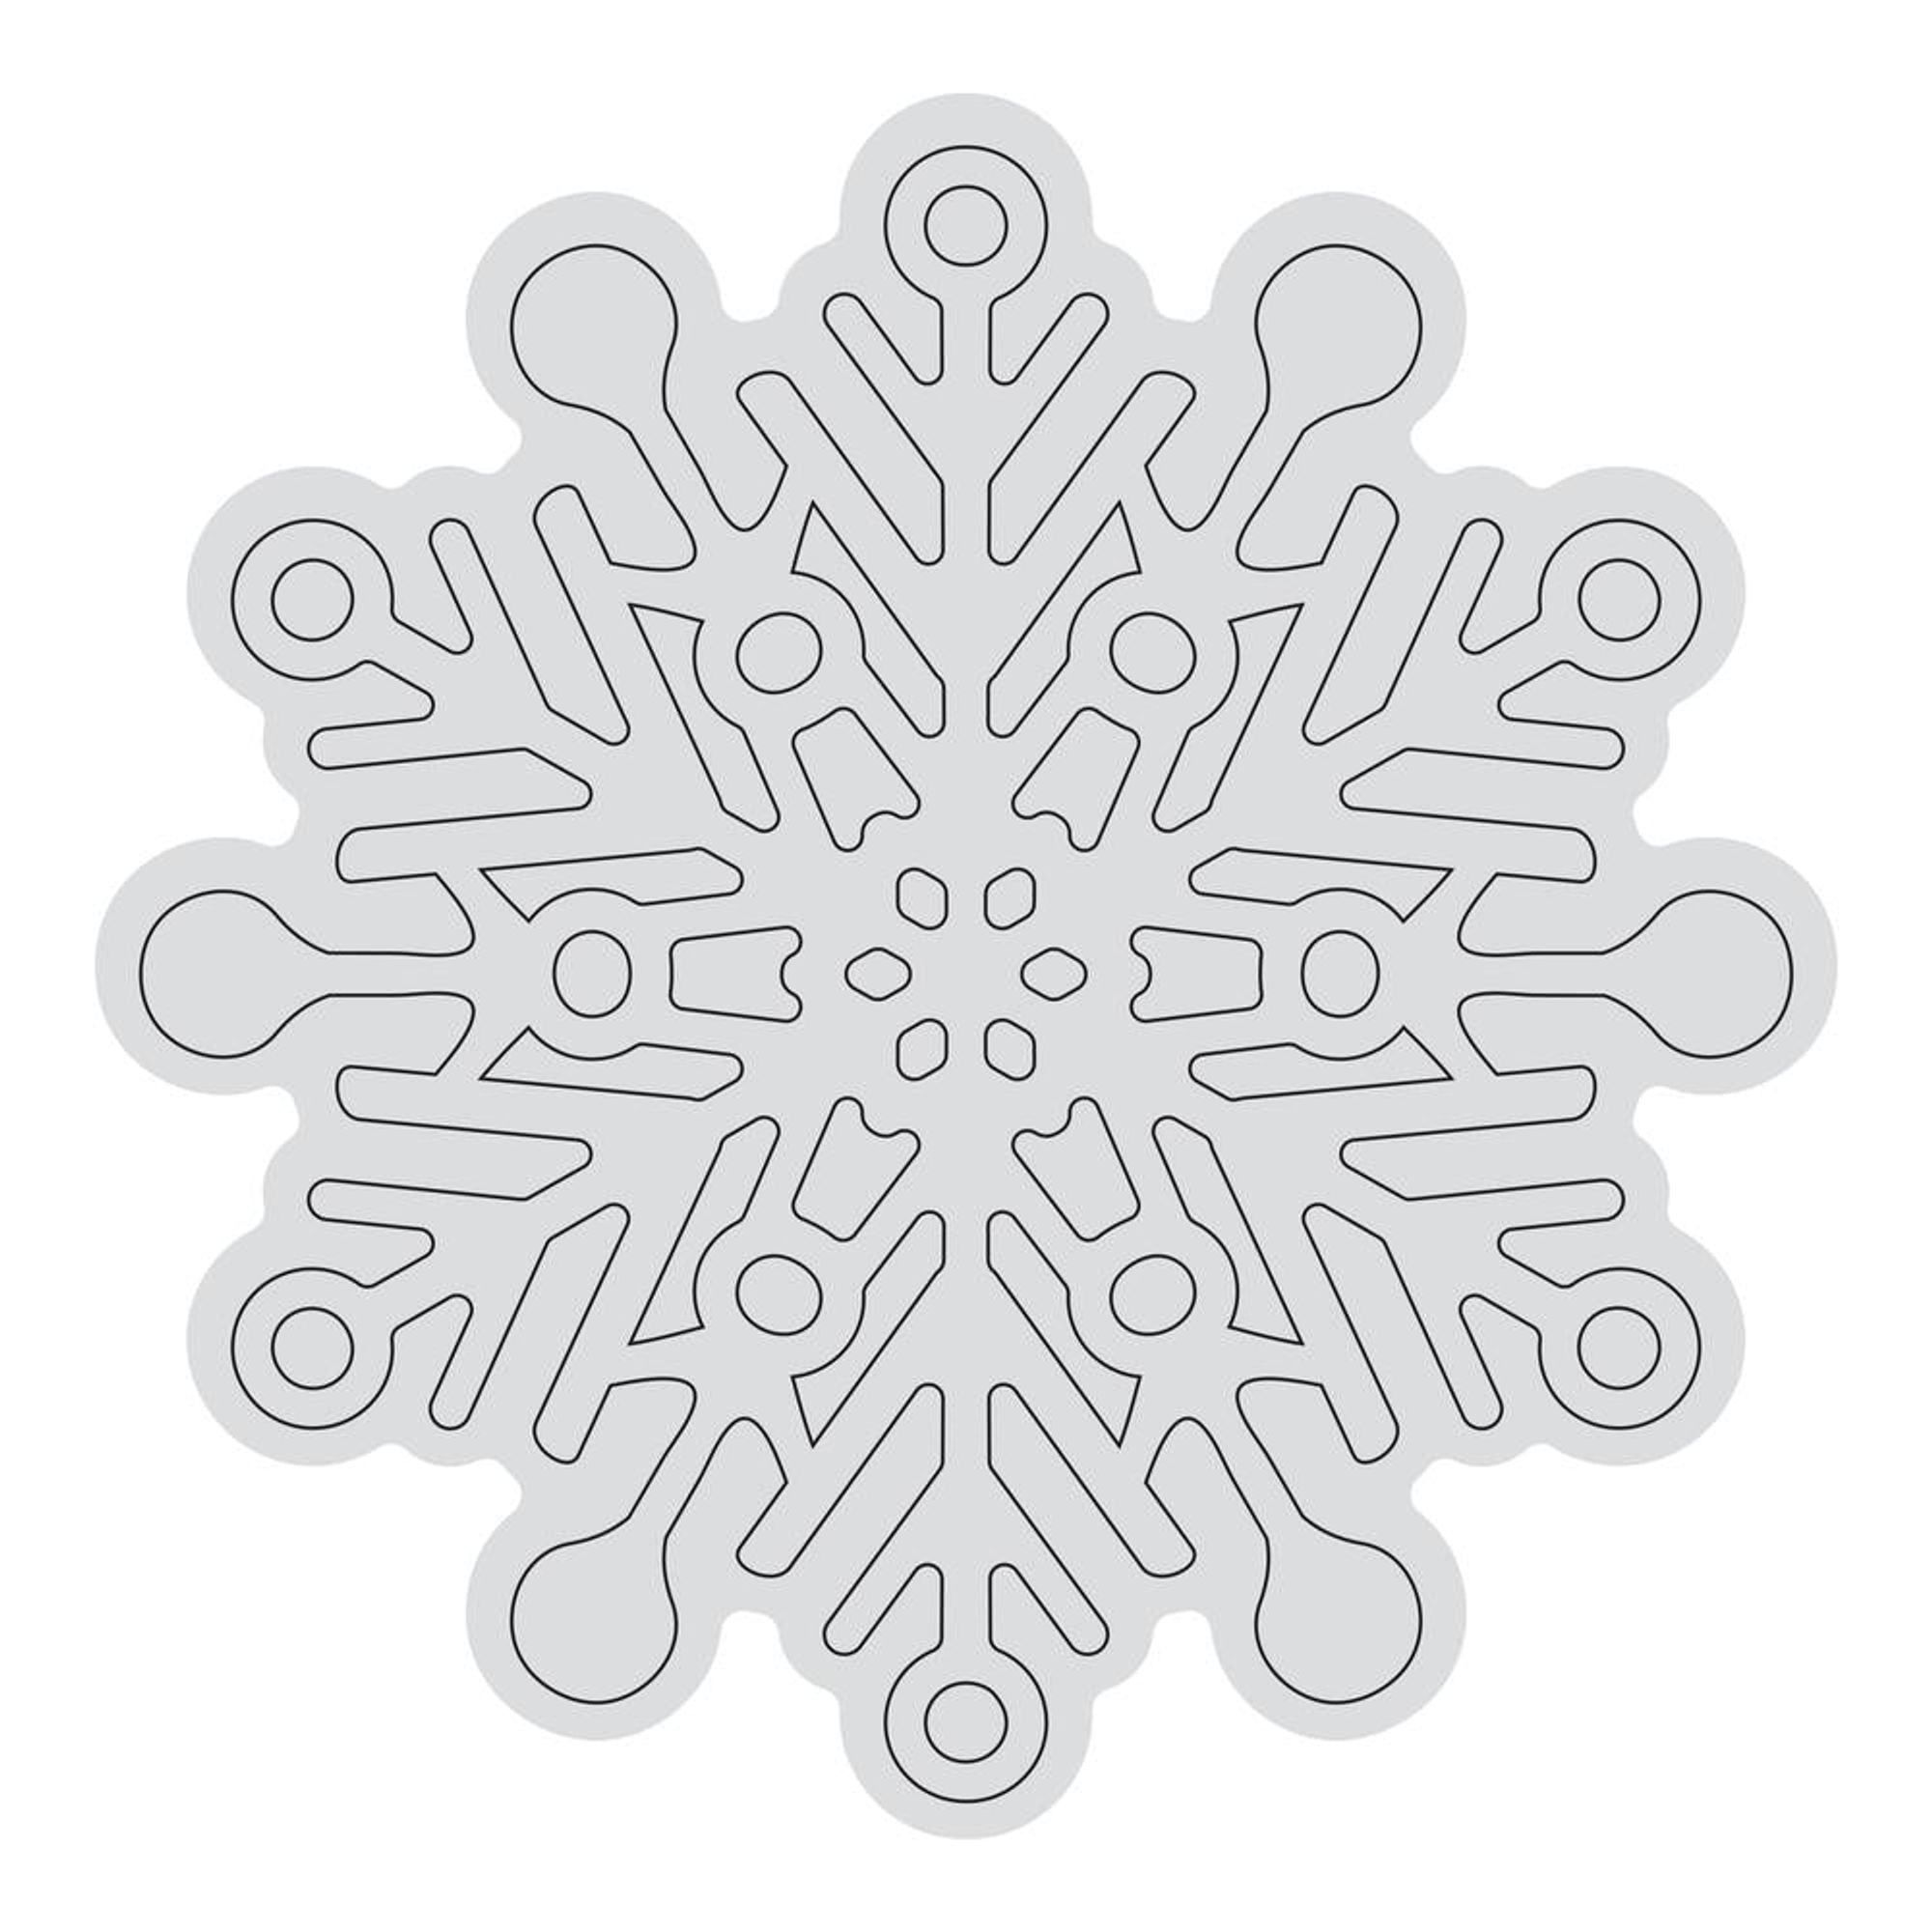 snowflake outline printable